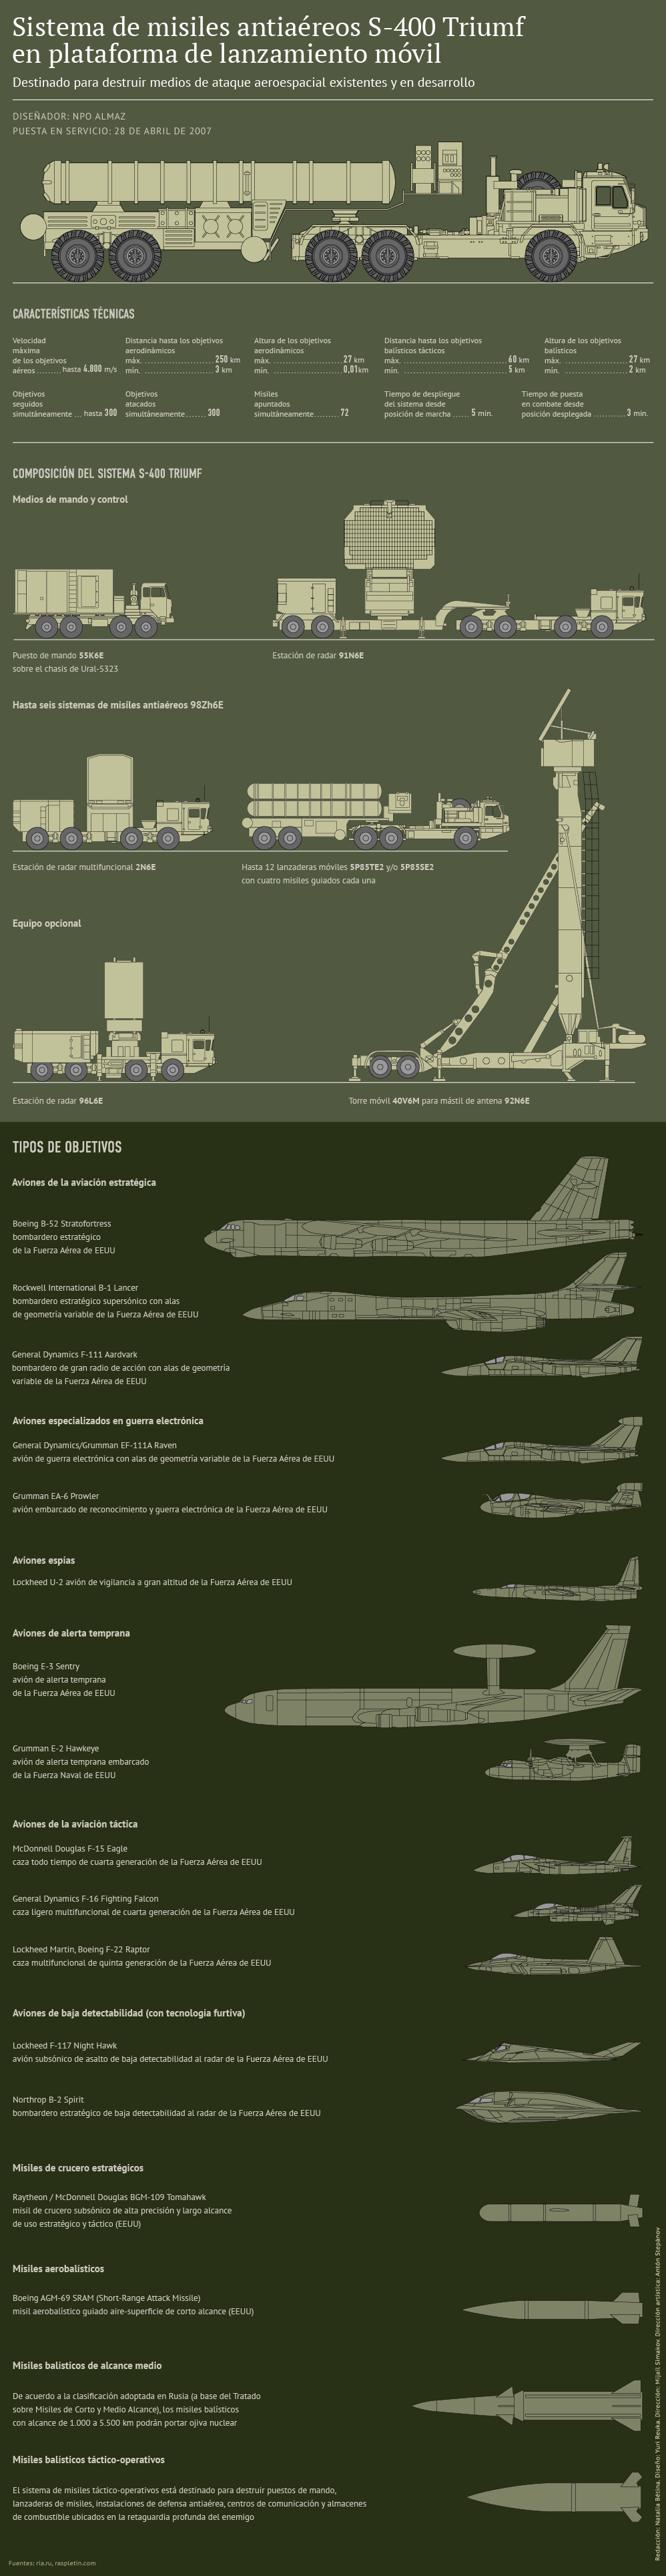 S-400 infografía